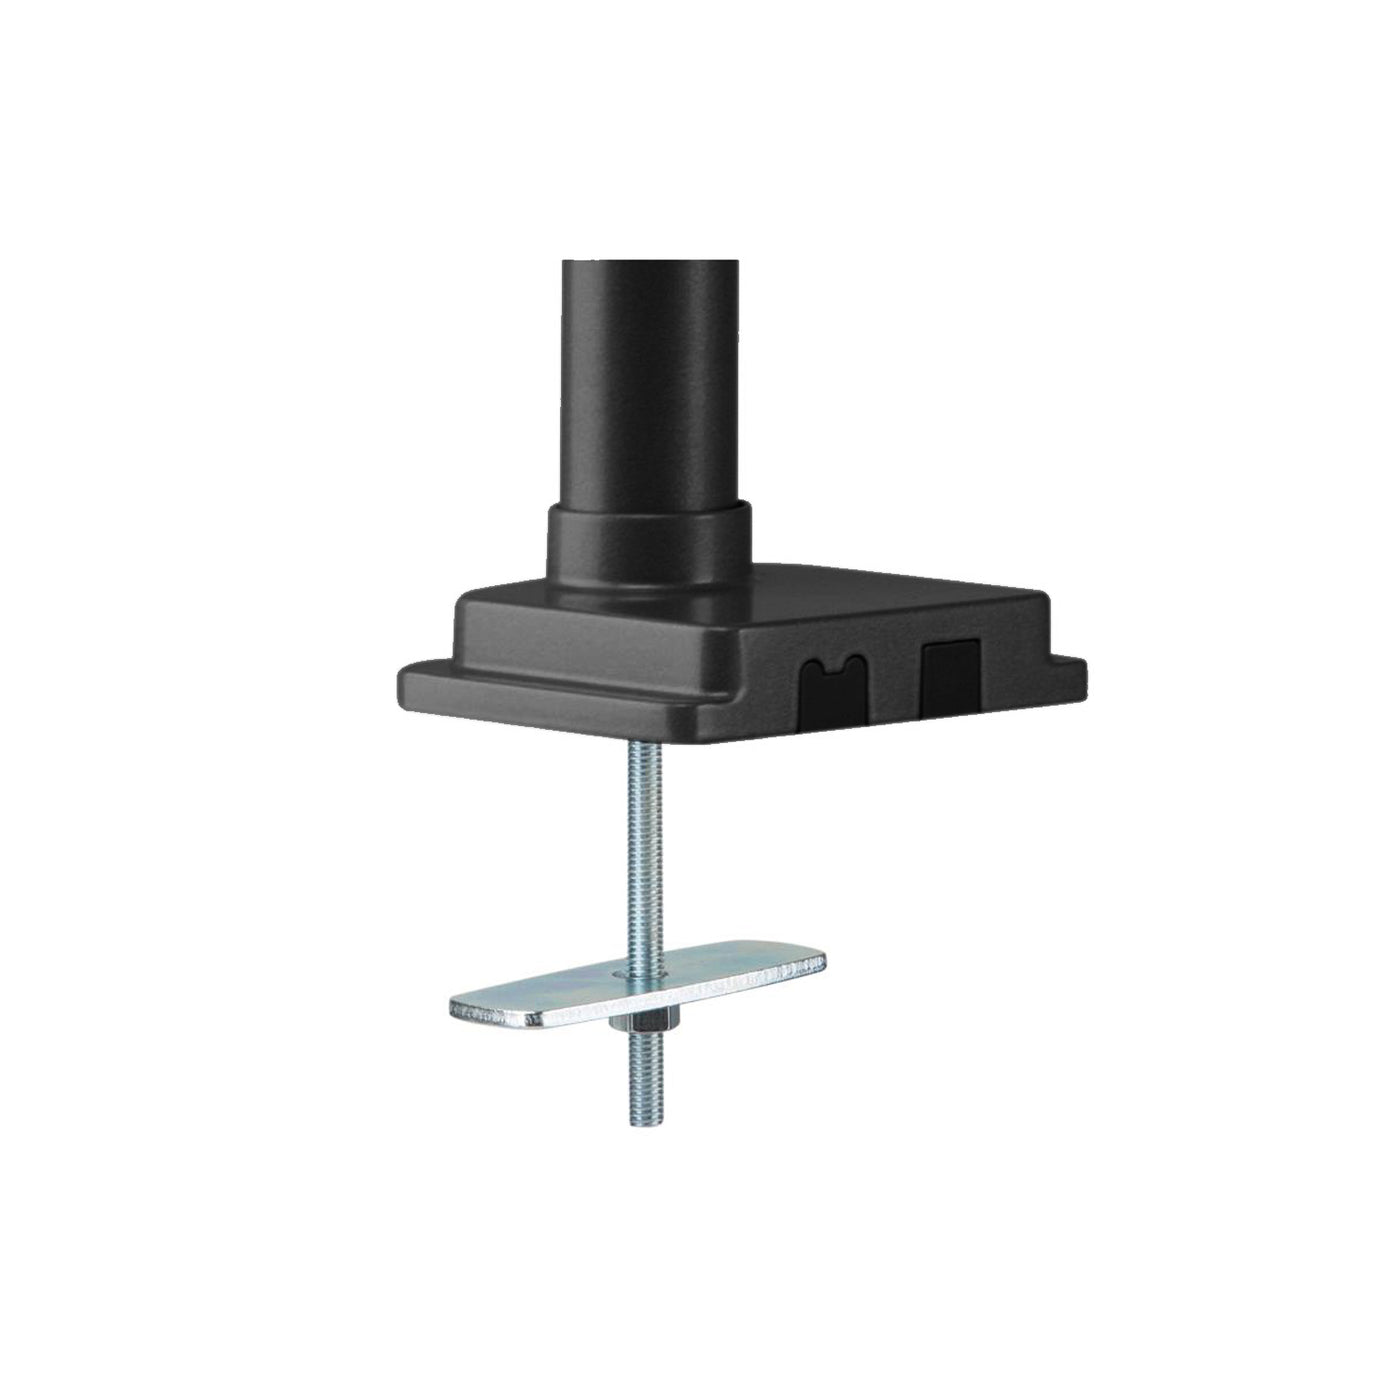 Ergo Office ER-407B Monitor Bracket Holder Desk Mount Adjustable Tilt Swivel 13" - 32"  VESA Universal